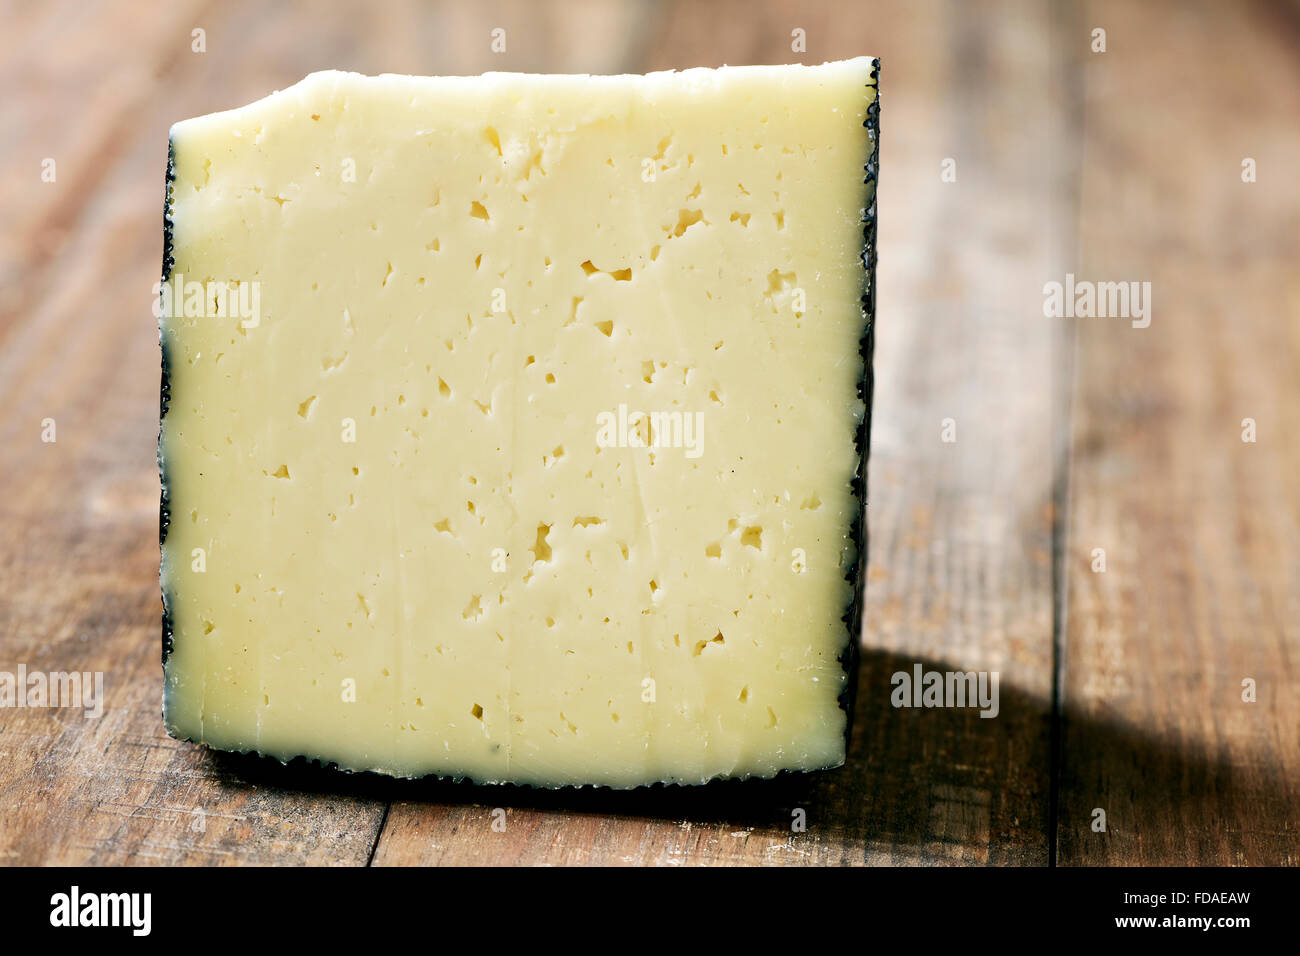 Primer plano de un trozo de queso manchego de España sobre una tabla de madera rústica Foto de stock